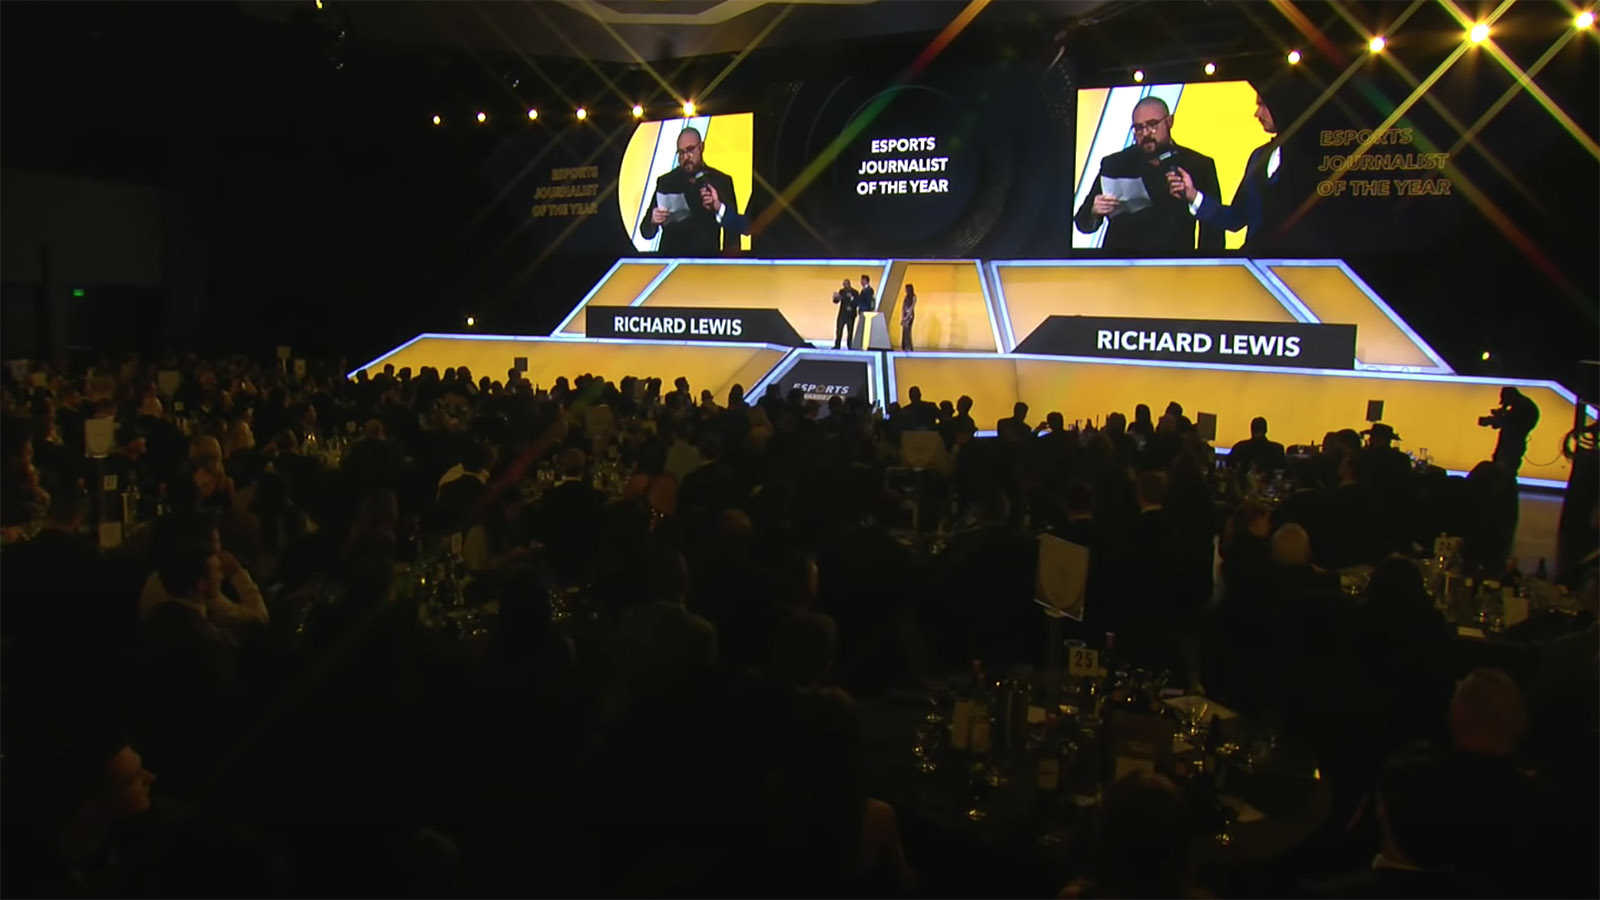 Richard Lewis Esports Awards Journalist des Jahres